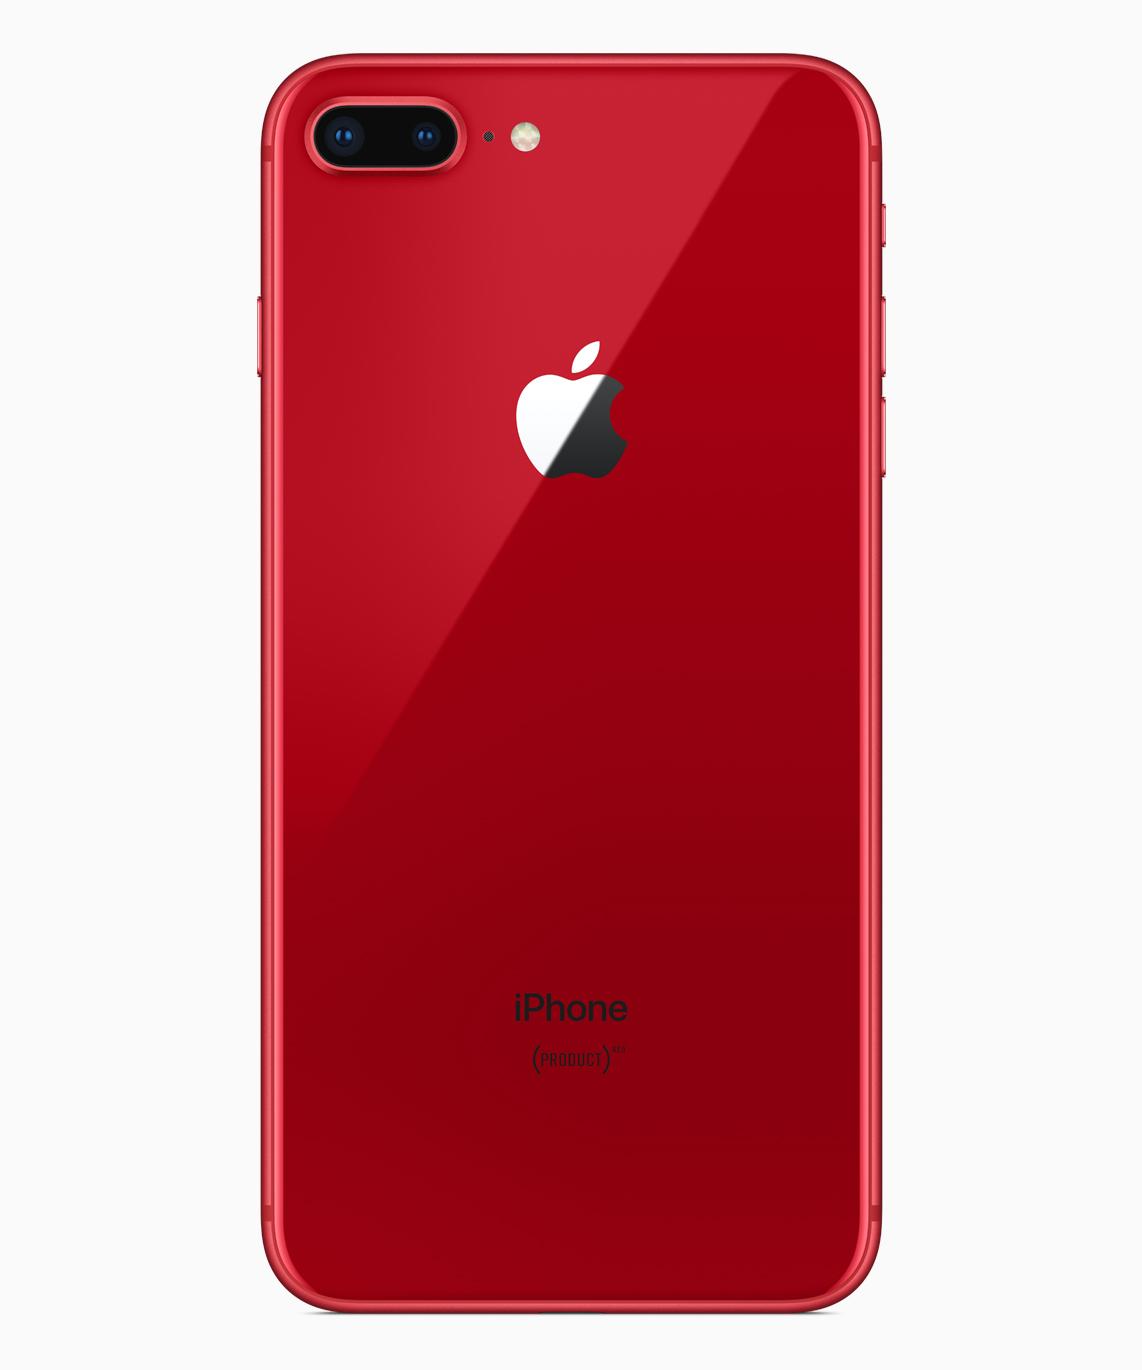 箱付属品おまけつきiPhone 8 Plus 64GB レッド 赤 限定色